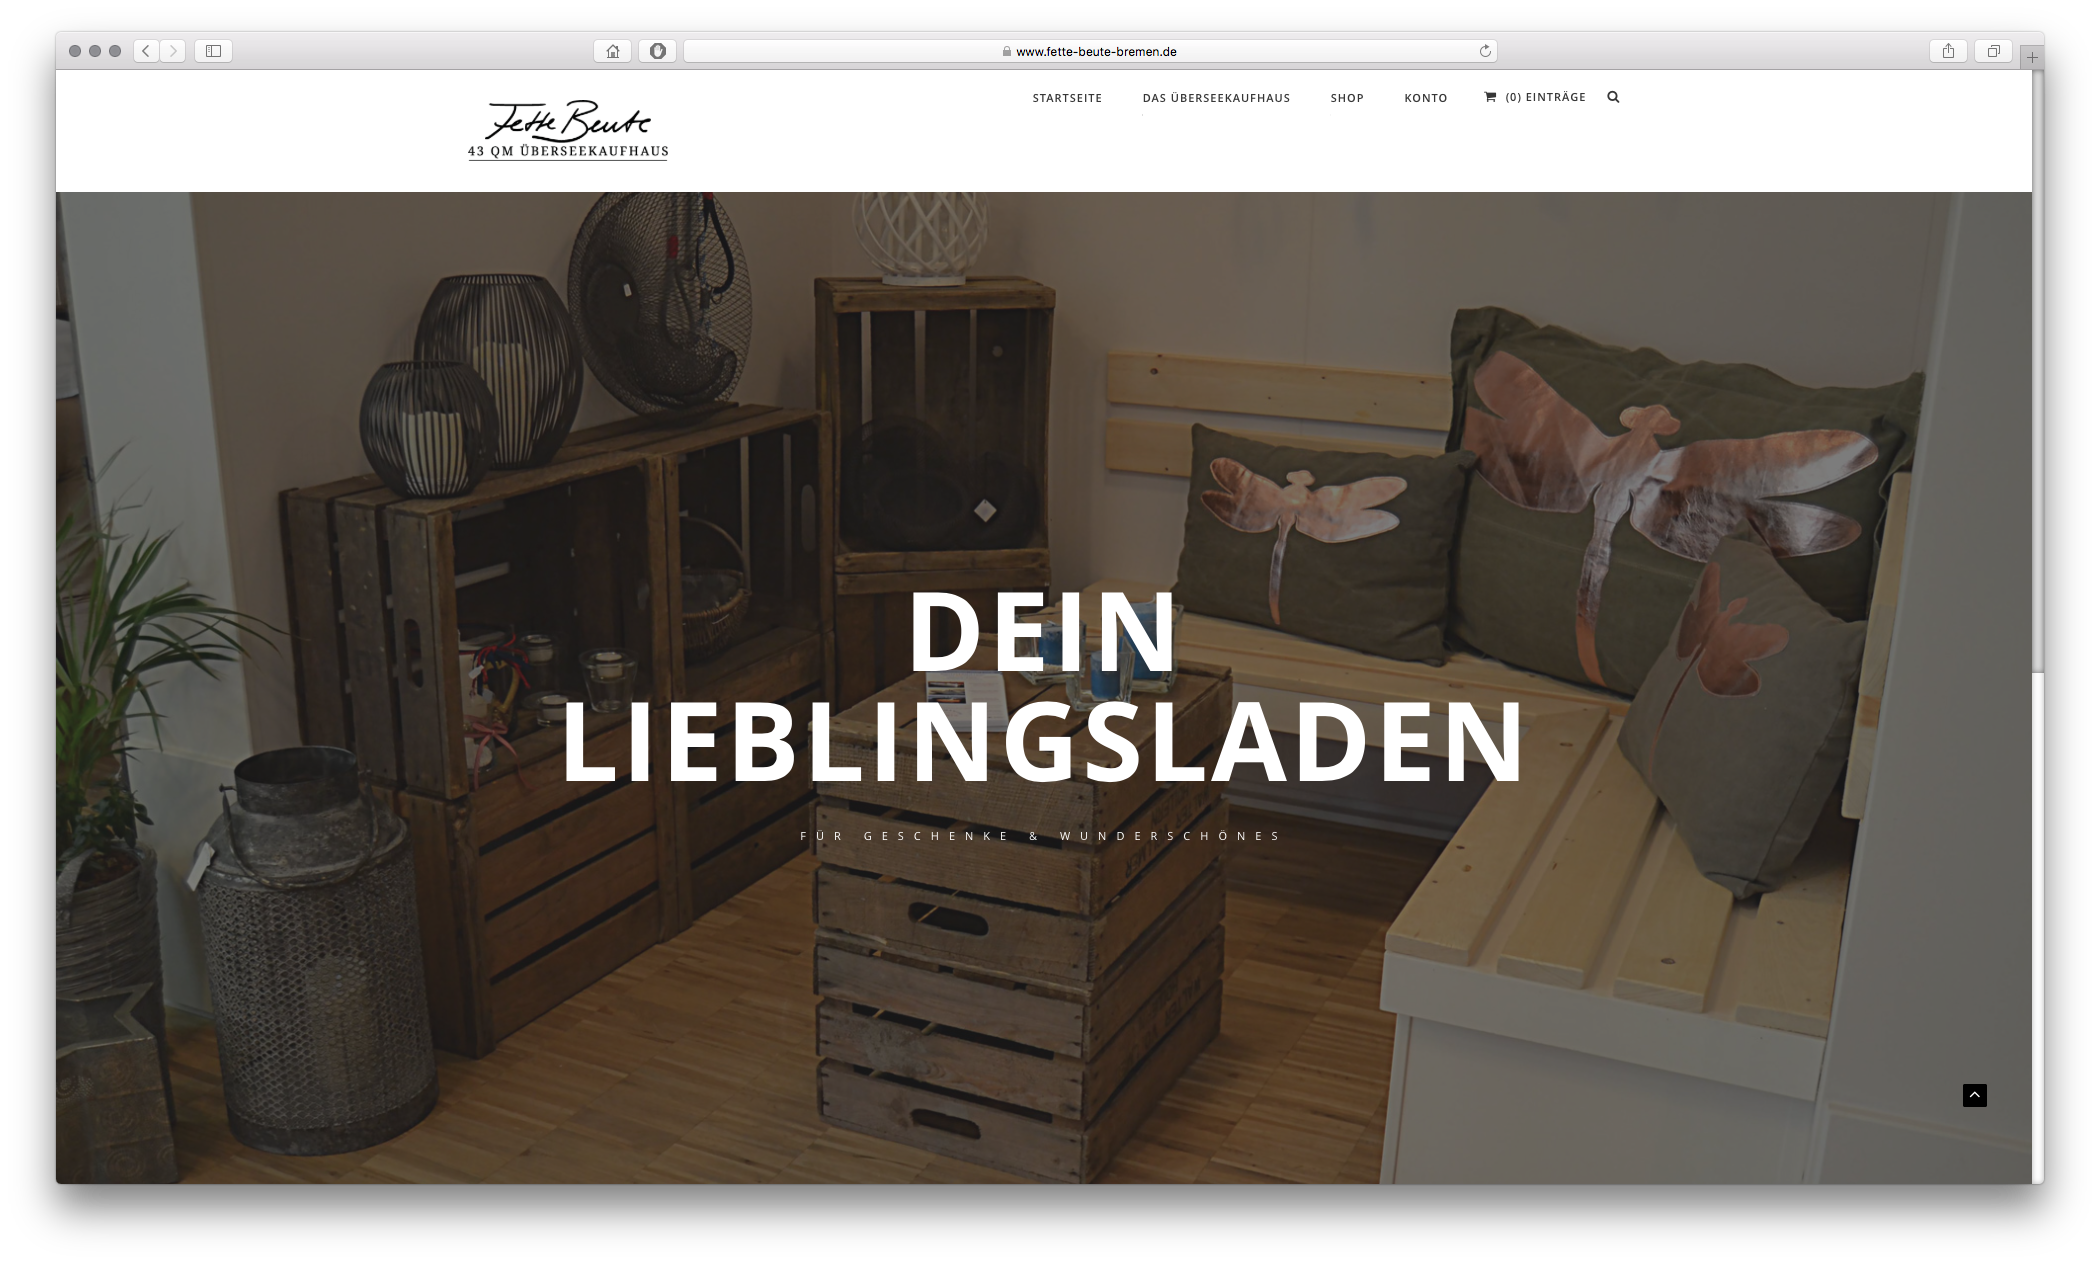 Drupal Commerce Webshop Fette Beute Bremen